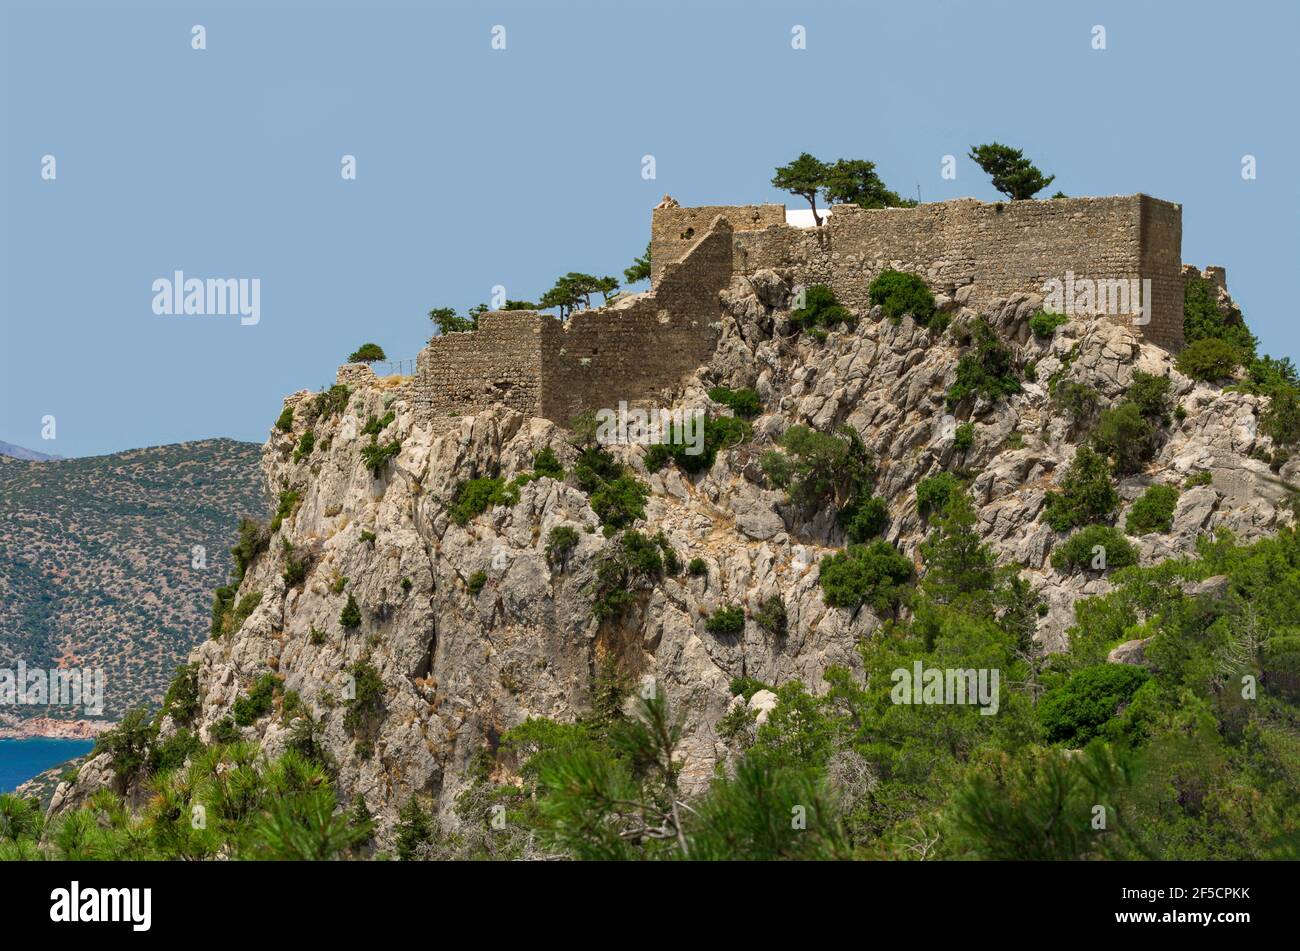 Fortaleza medieval de Monolithos en un acantilado rocoso construido por los cruzados en el siglo 15th (Rodas, Grecia) Foto de stock